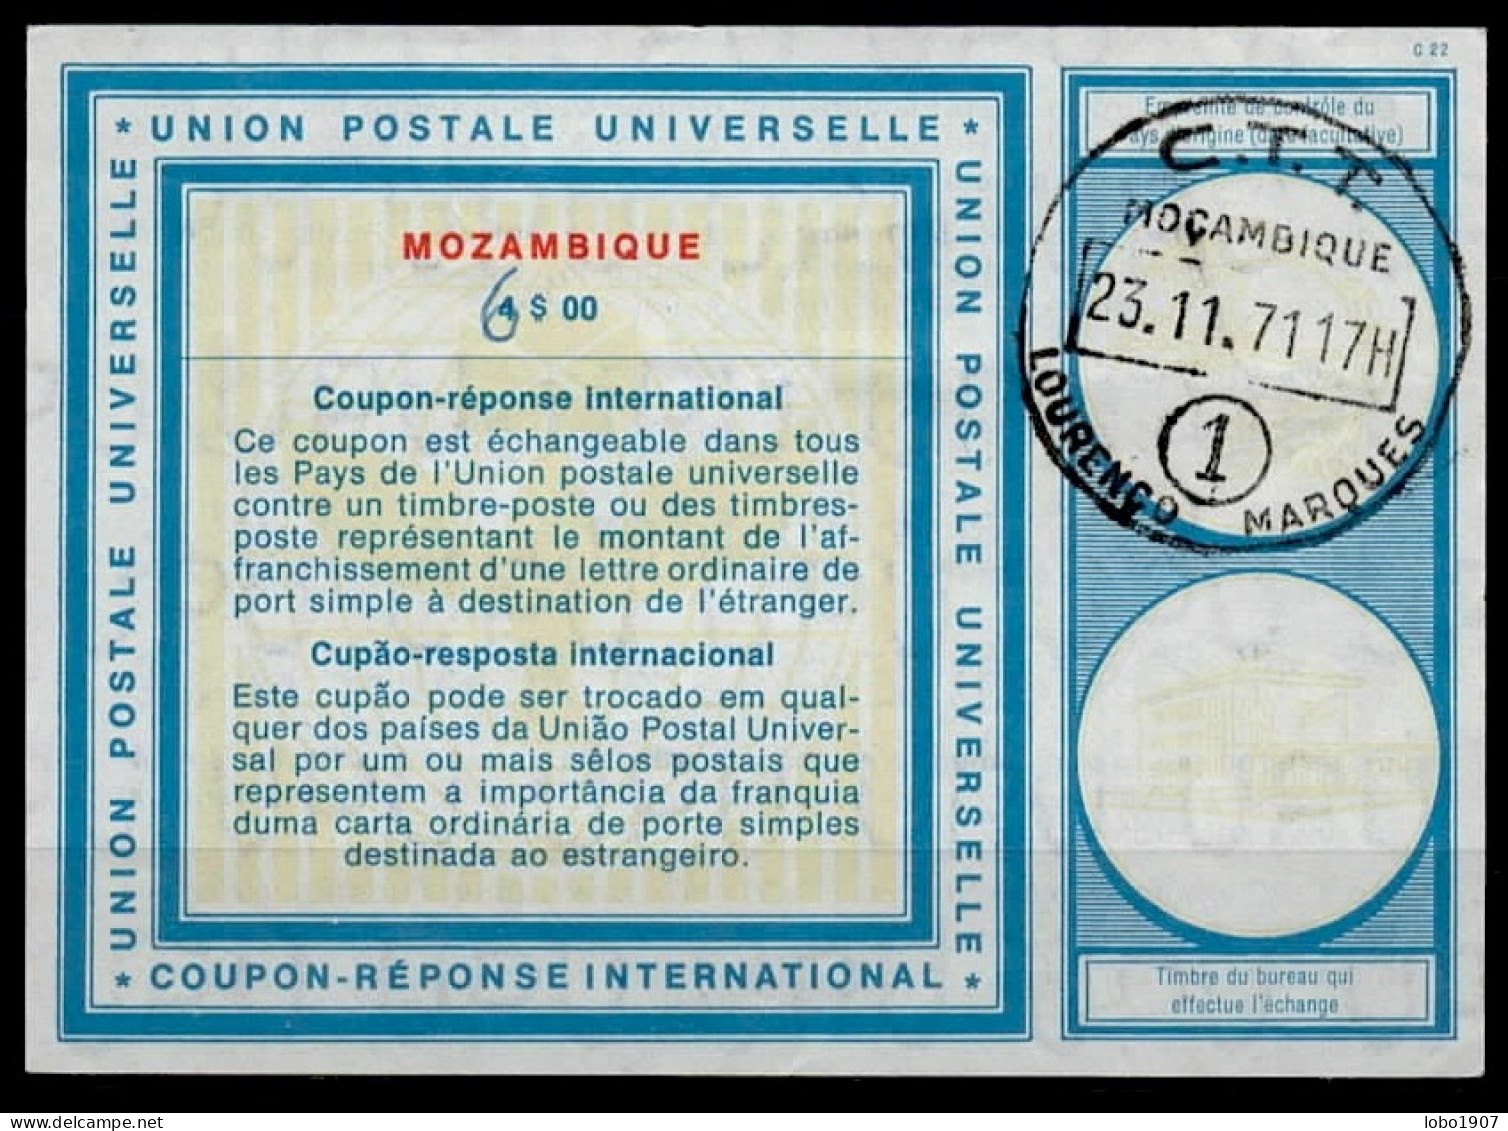 MOZAMBIQUE  Vi19  6 / 4$00 International Reply Coupon Reponse Cupon Respuesta IRC IAS  Cupon Respuesta O LOURENZO MARQUE - Mozambico